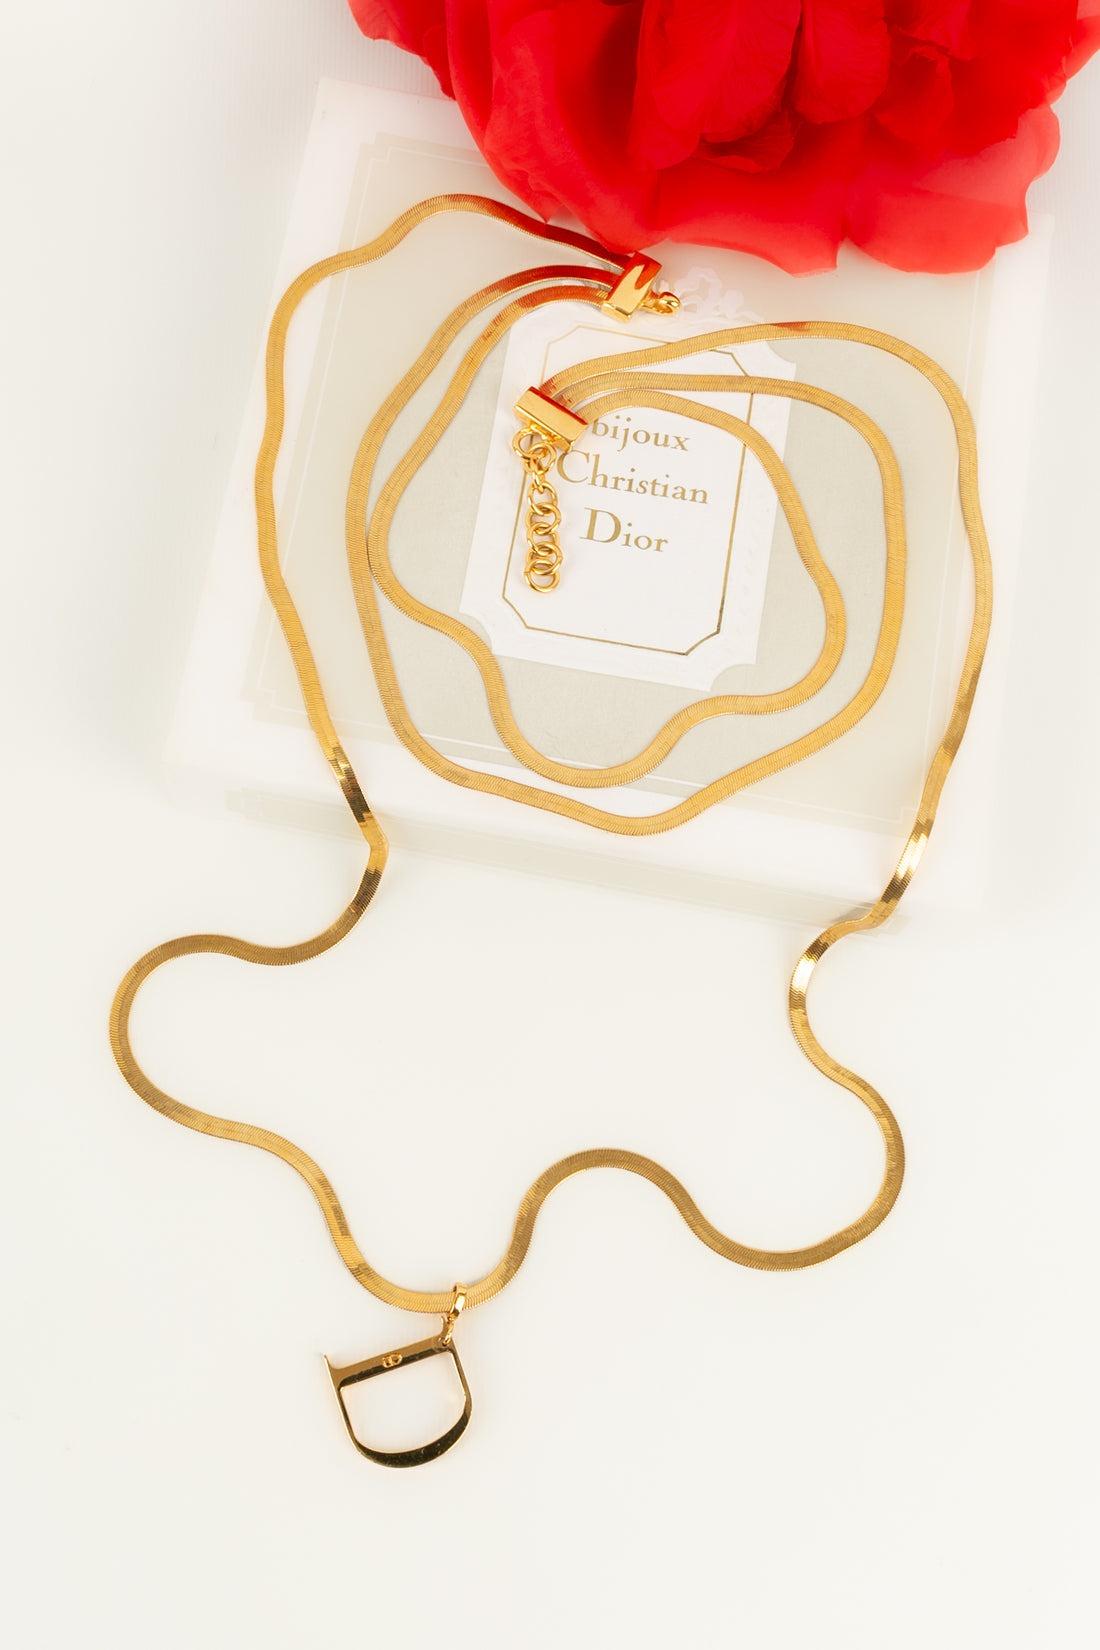 Christian Dior, collier à 3 chaînes en métal plaqué or 4